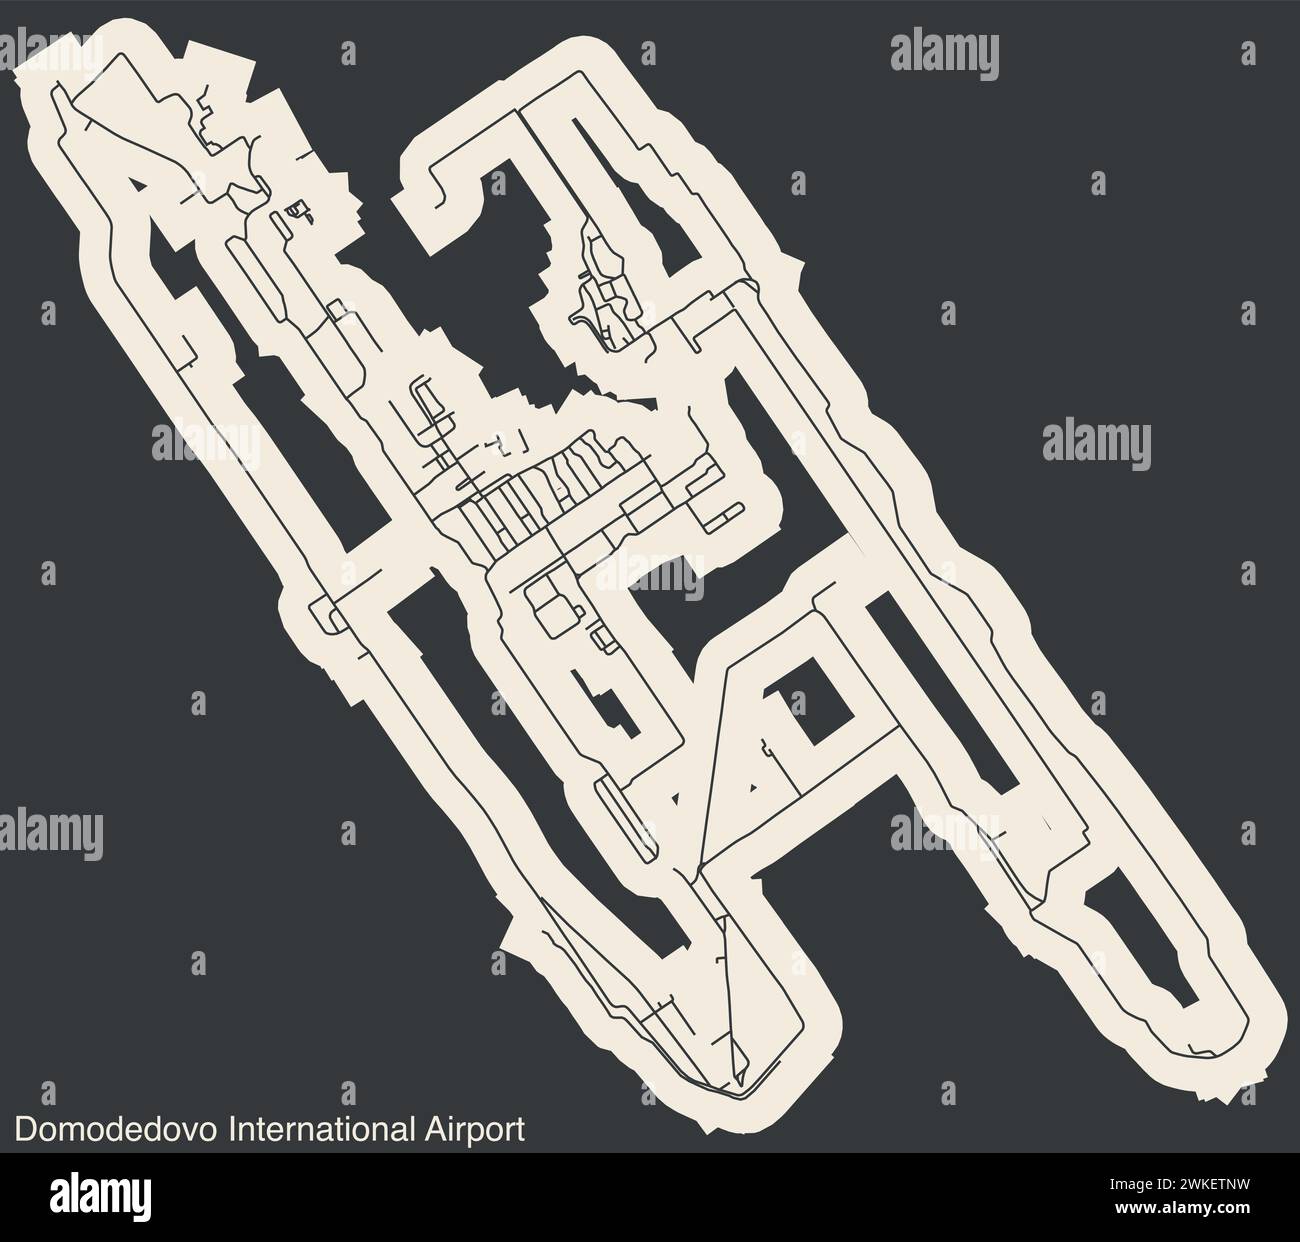 Plan des terminaux de l'AÉROPORT DOMODEDOVO MIKHAIL LOMONOSOV DE MOSCOU (DME), MOSCOU Illustration de Vecteur